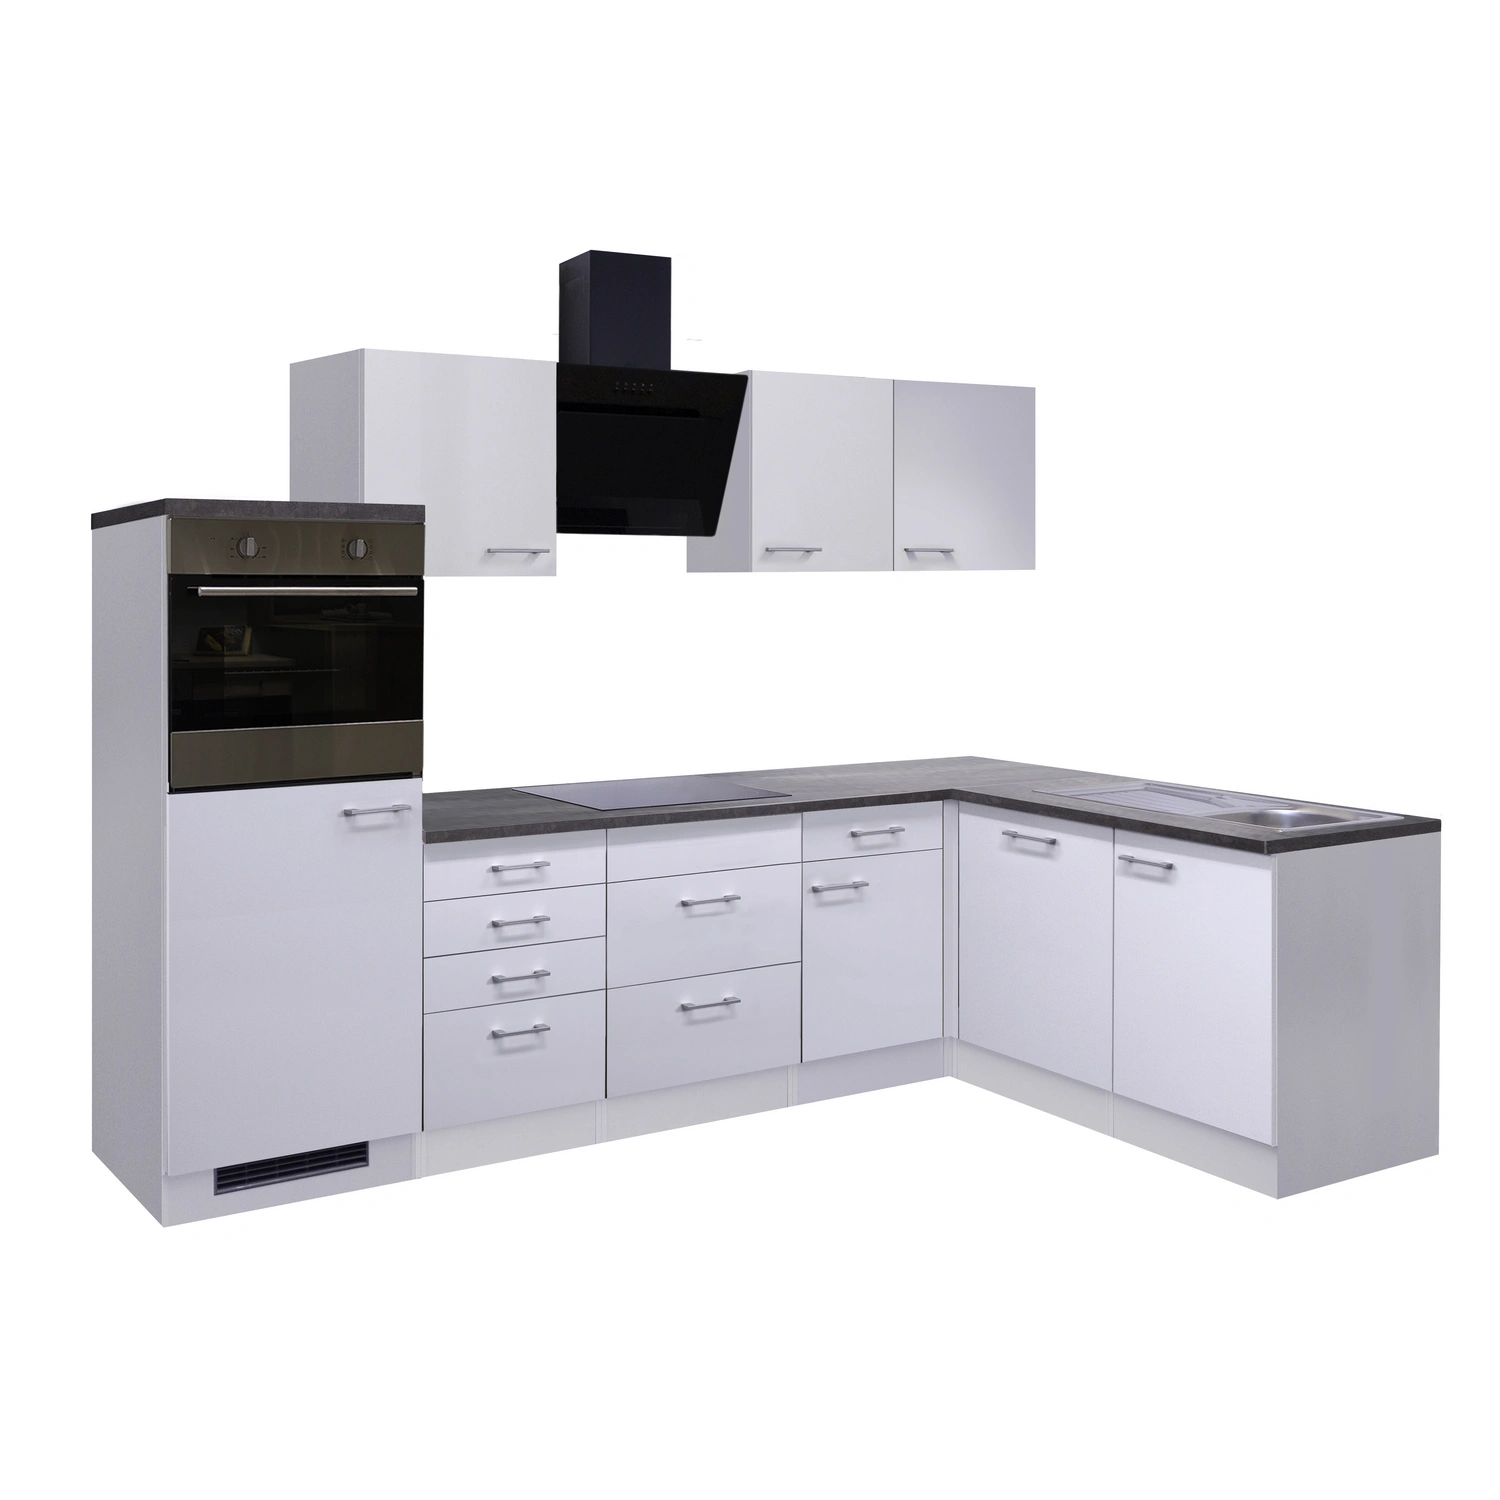 Flex-Well Winkelküche, mit E-Geräten, Gesamtbreite: 280 cm, Arbeitsplatte  mit Melaminharz-Beschichtung | Spülenschränke